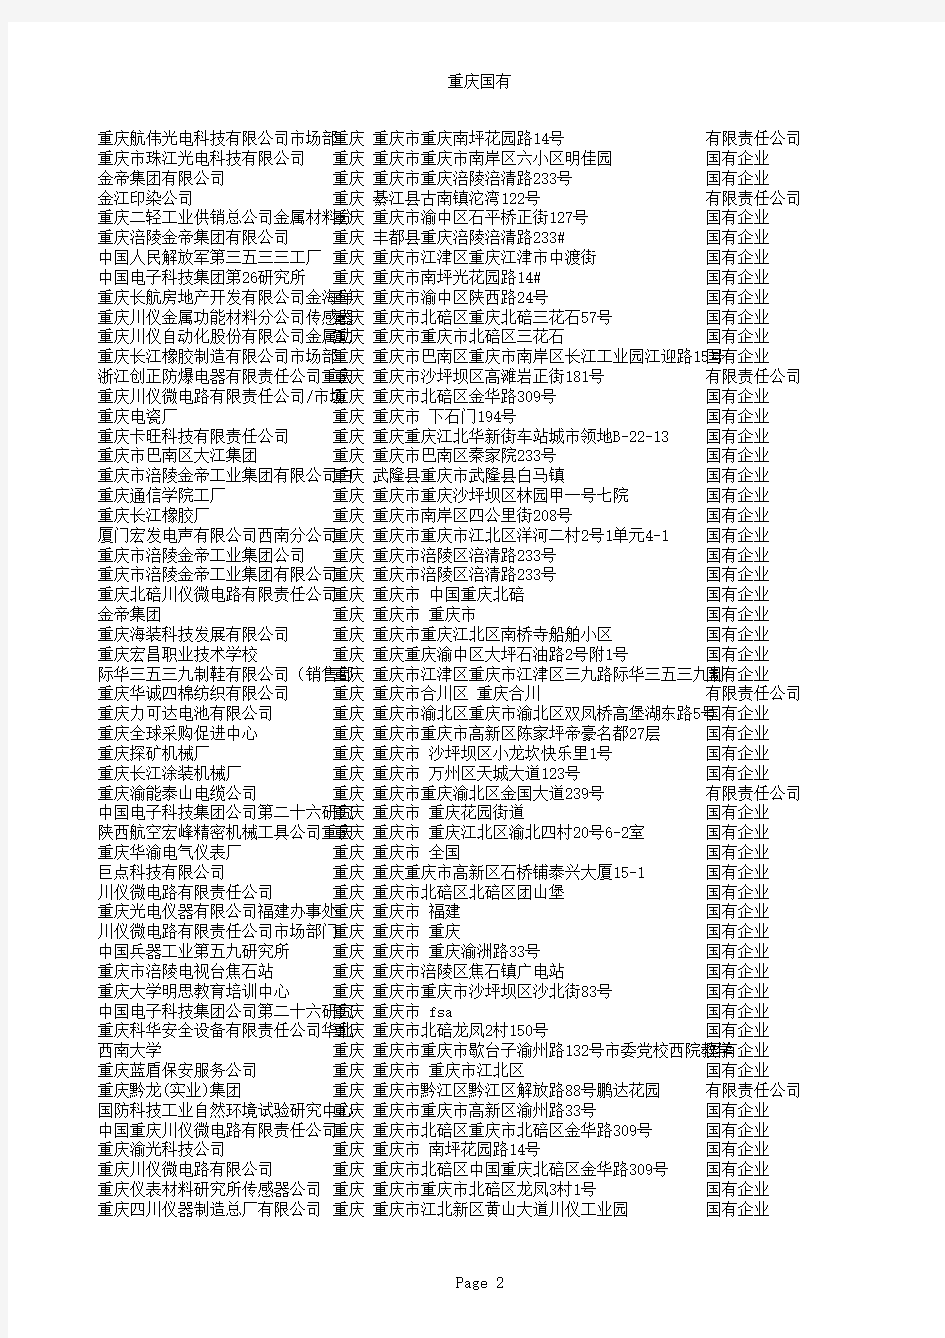 重庆市国有企业名录